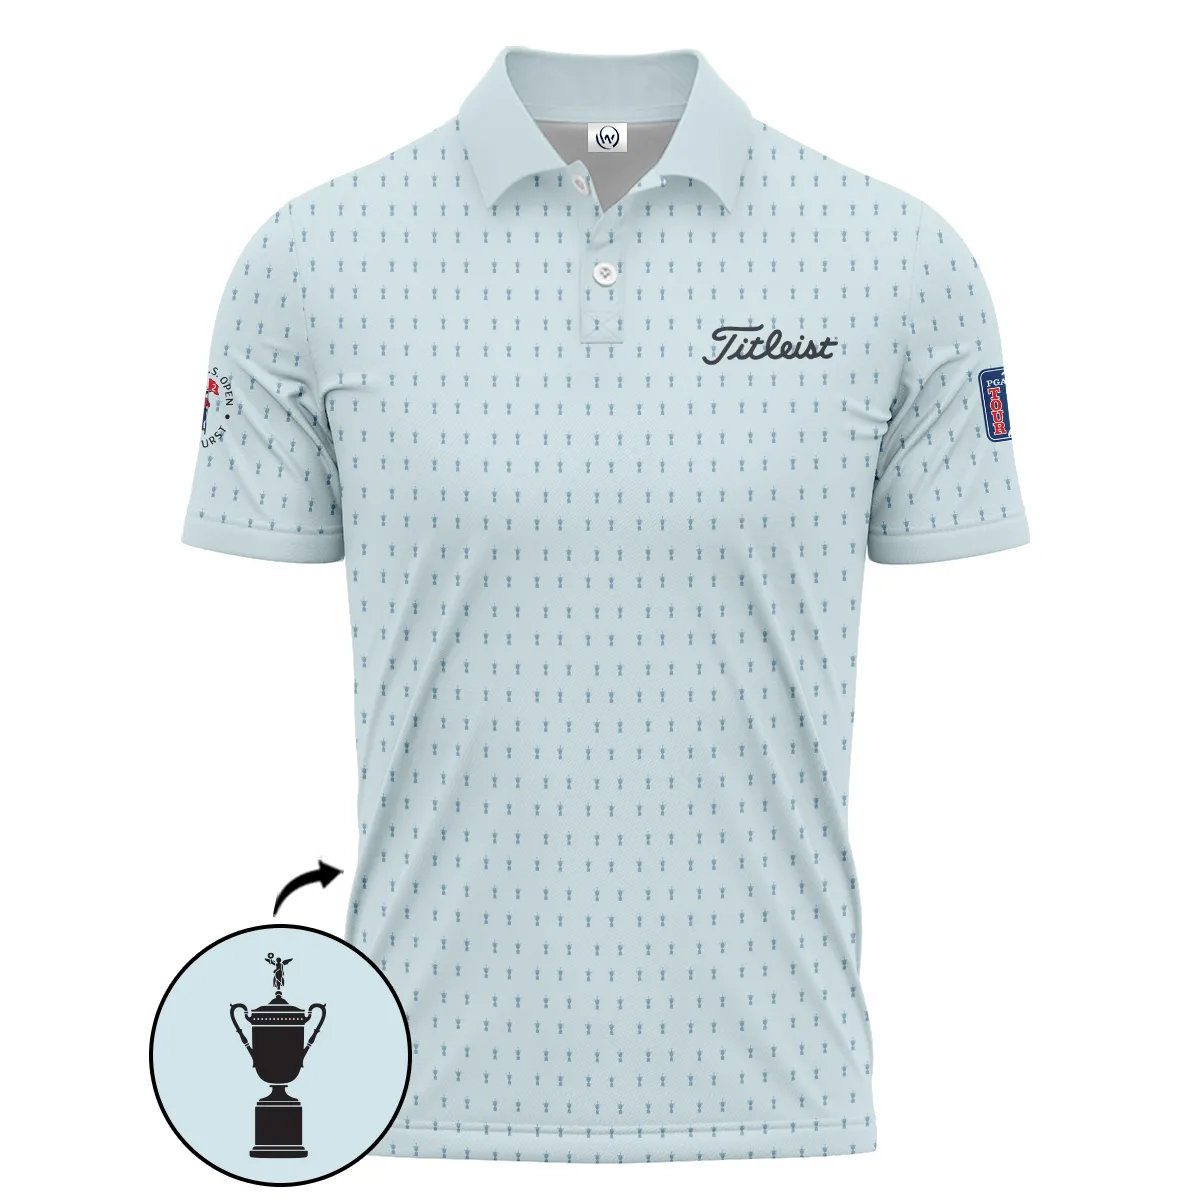 Golf Pattern Cup Light Blue Mix Green 124th U.S. Open Pinehurst Pinehurst Titleist Hoodie Shirt Style Classic